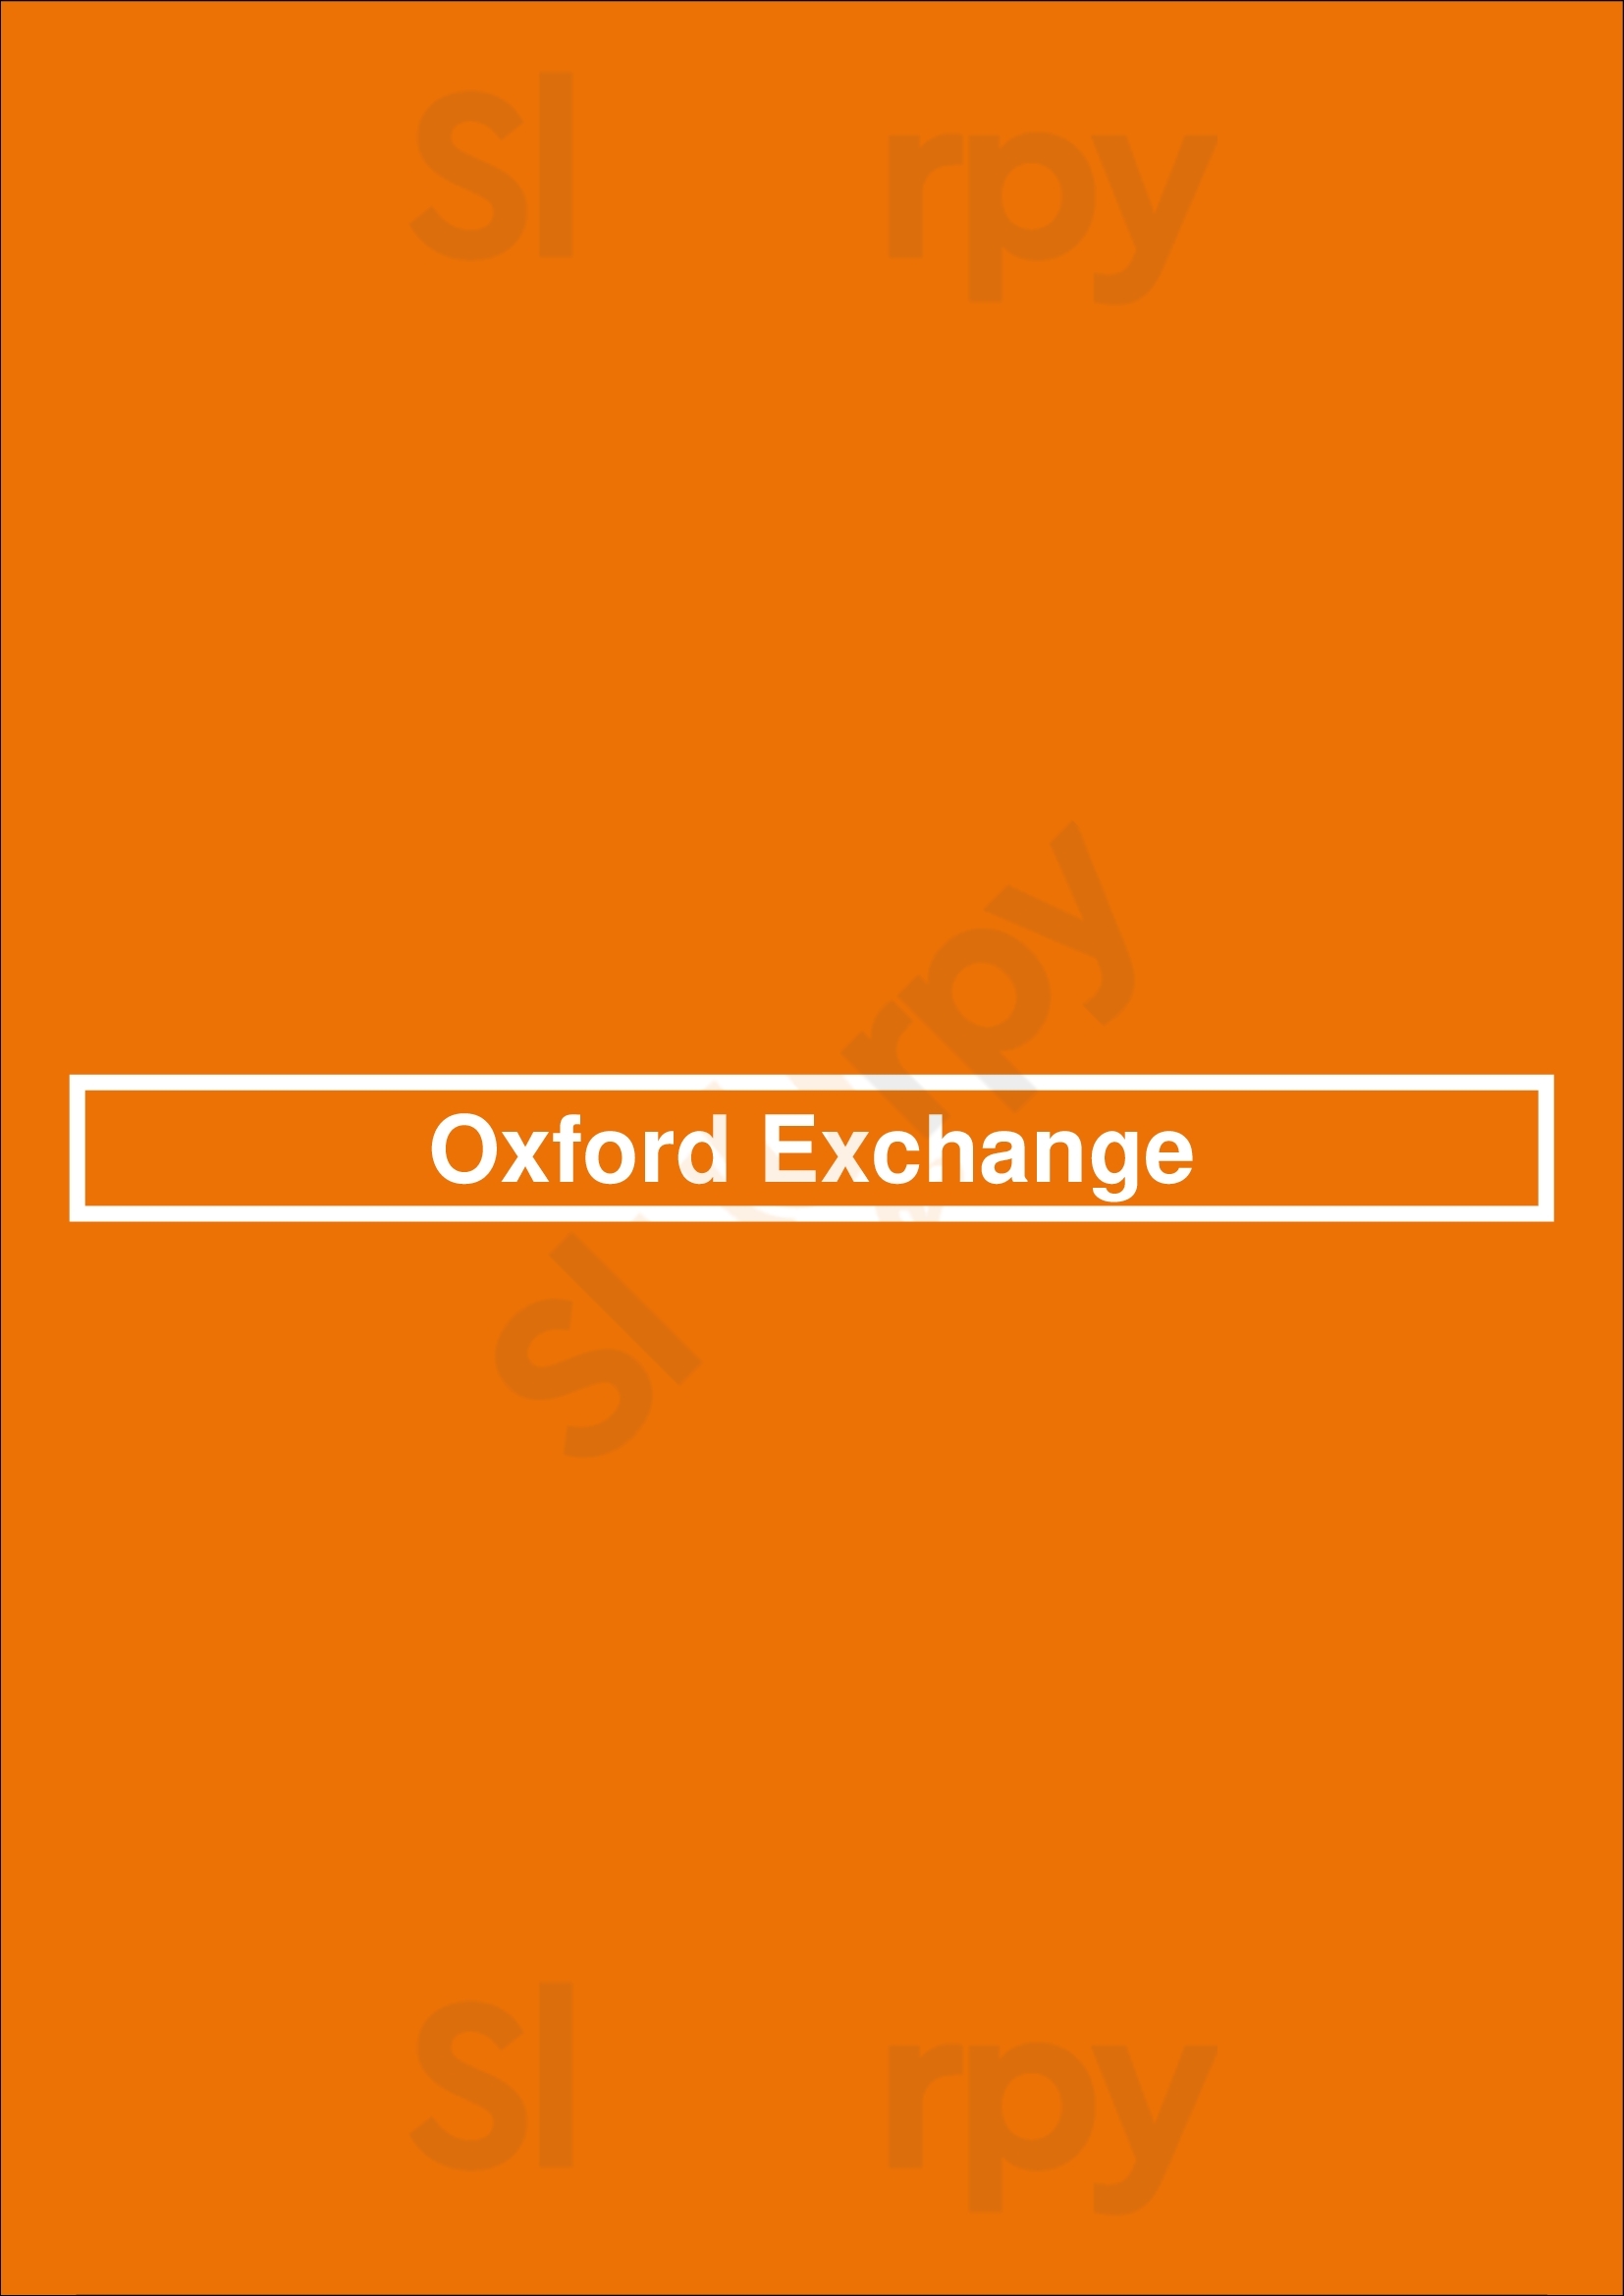 Oxford Exchange Tampa Menu - 1